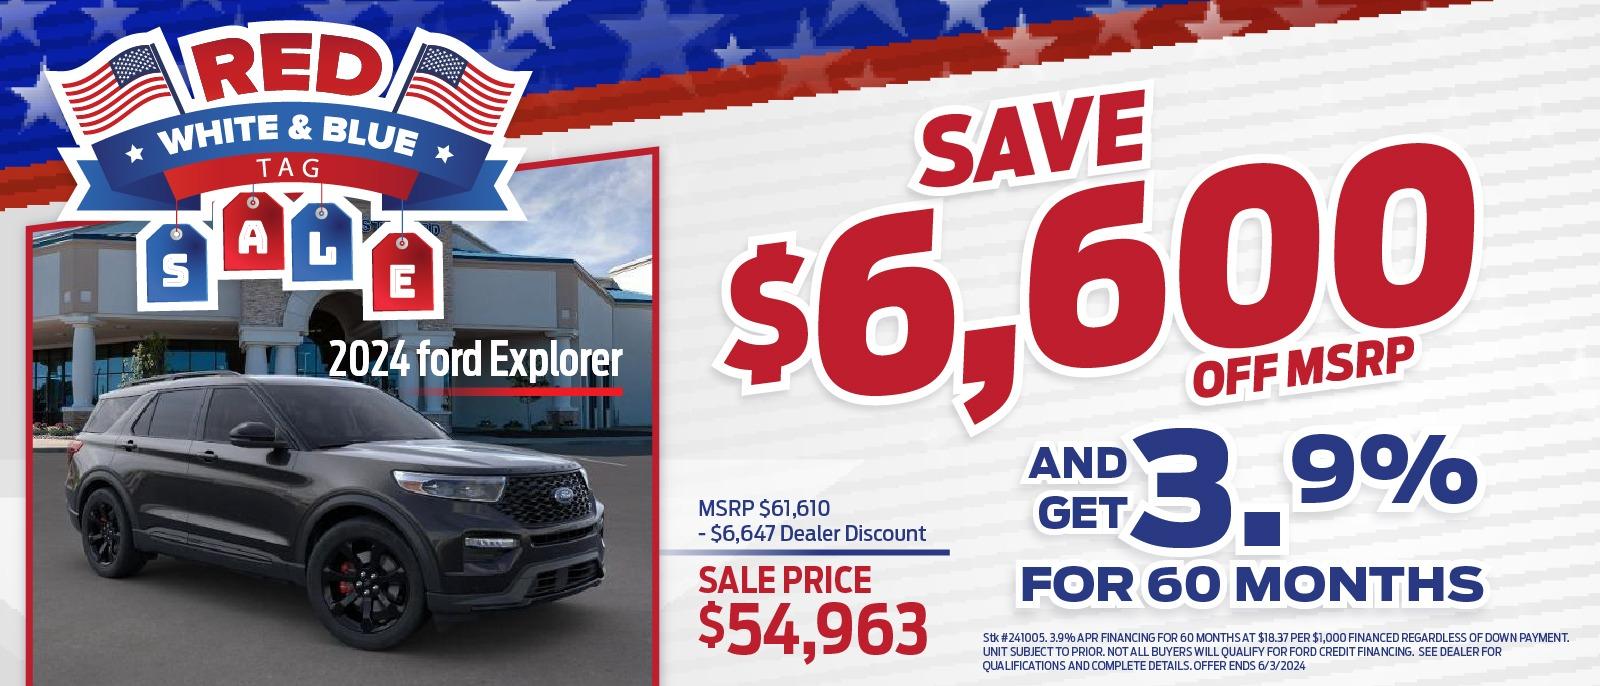 2024 Ford Explorer
Save $6,600 Off MSRP